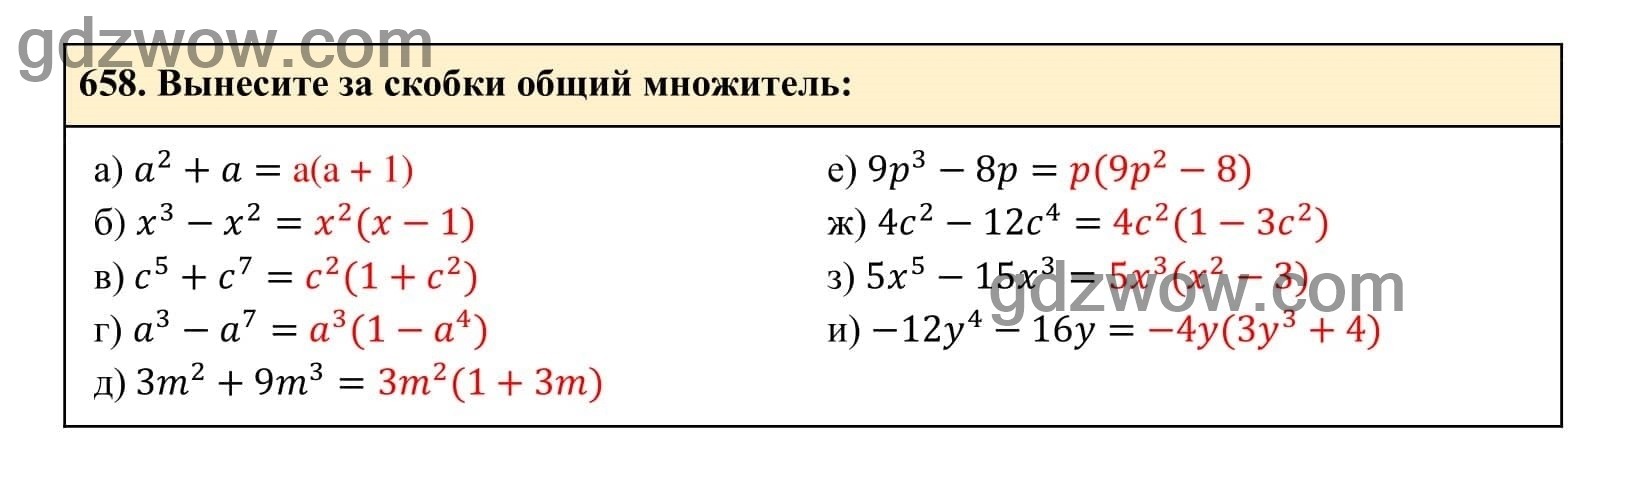 Упражнение 658 - ГДЗ по Алгебре 7 класс Учебник Макарычев (решебник) - GDZwow